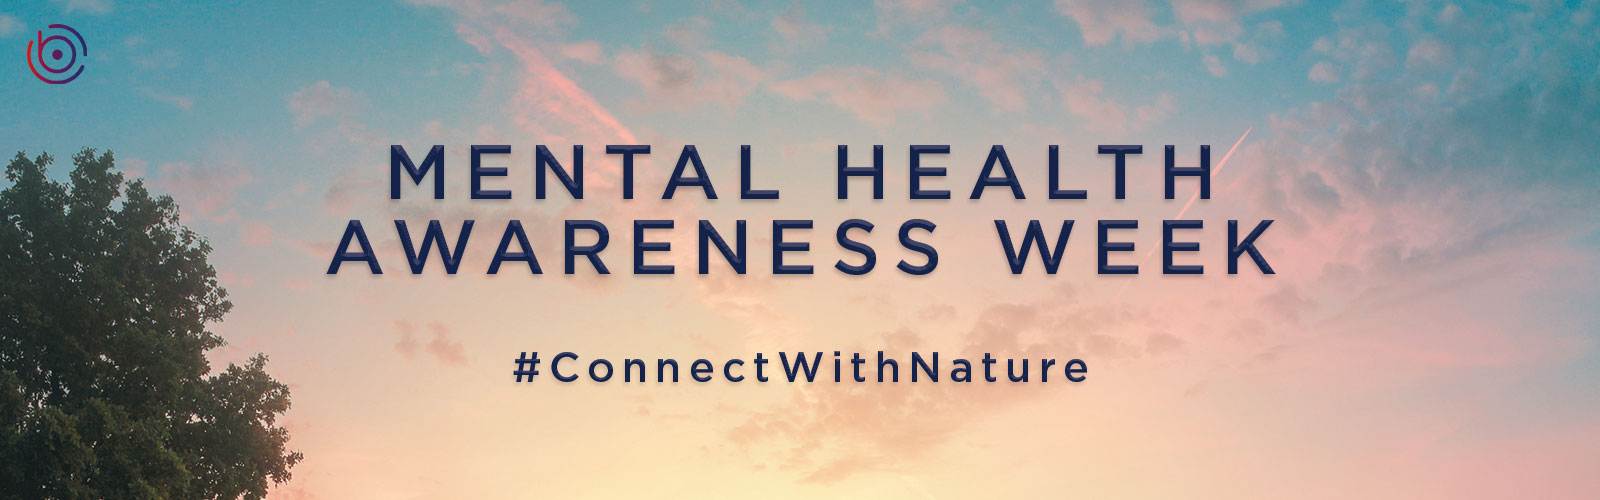 CamdenBoss - Mental Health Awareness Week #ConnectWithNature